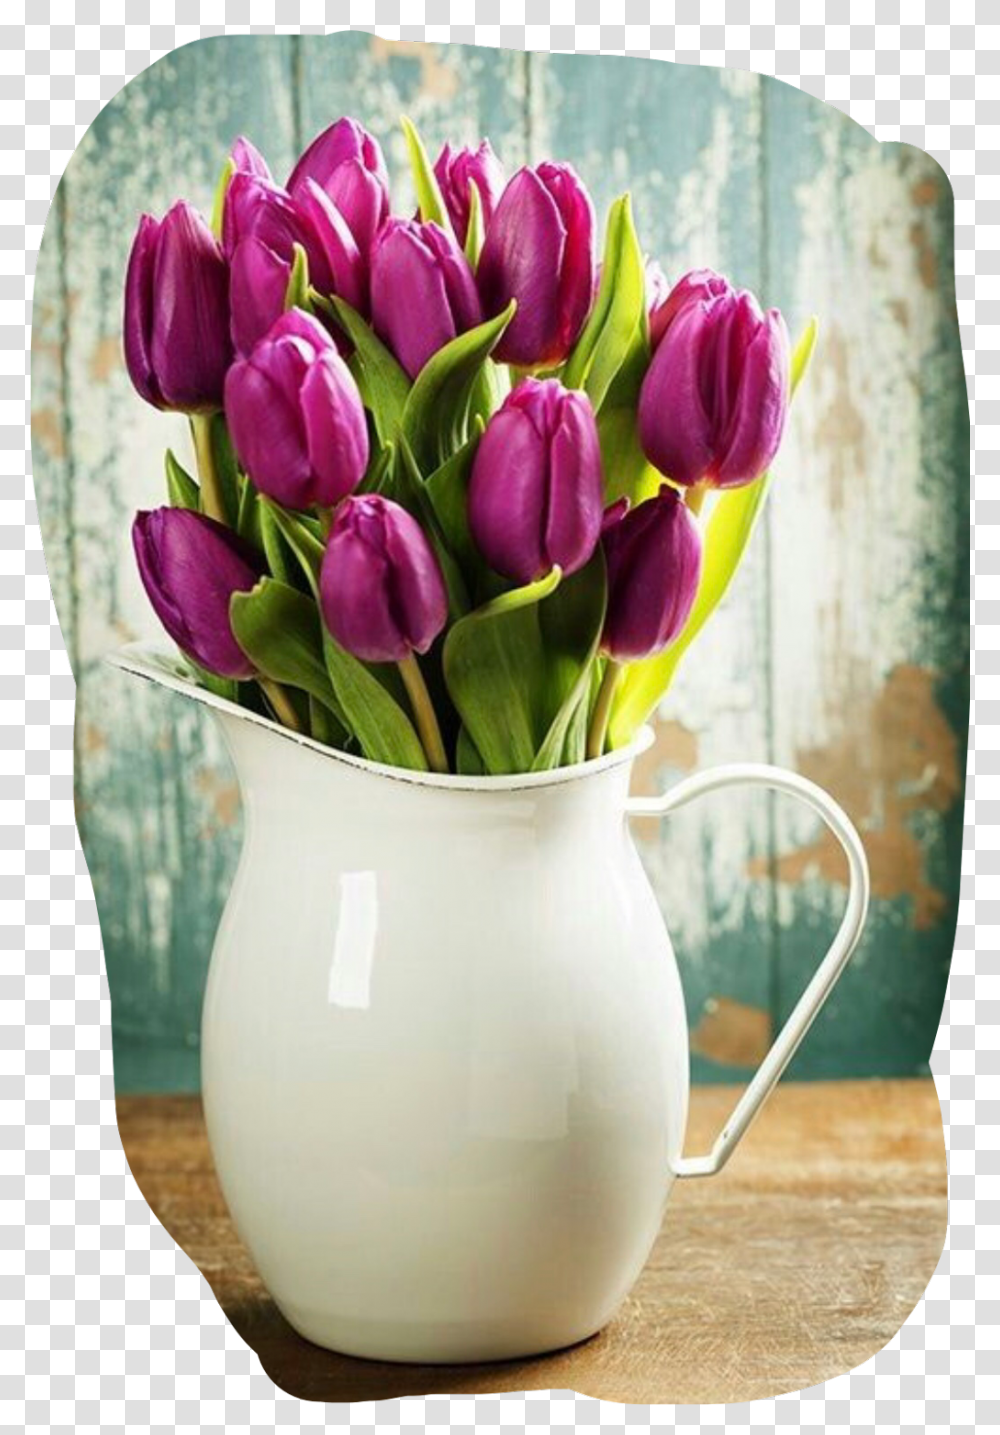 Tulips Purple Vase Pitcher Purple Decor Pretty Good Often Noon Images Telugu, Plant, Flower, Blossom, Flower Bouquet Transparent Png